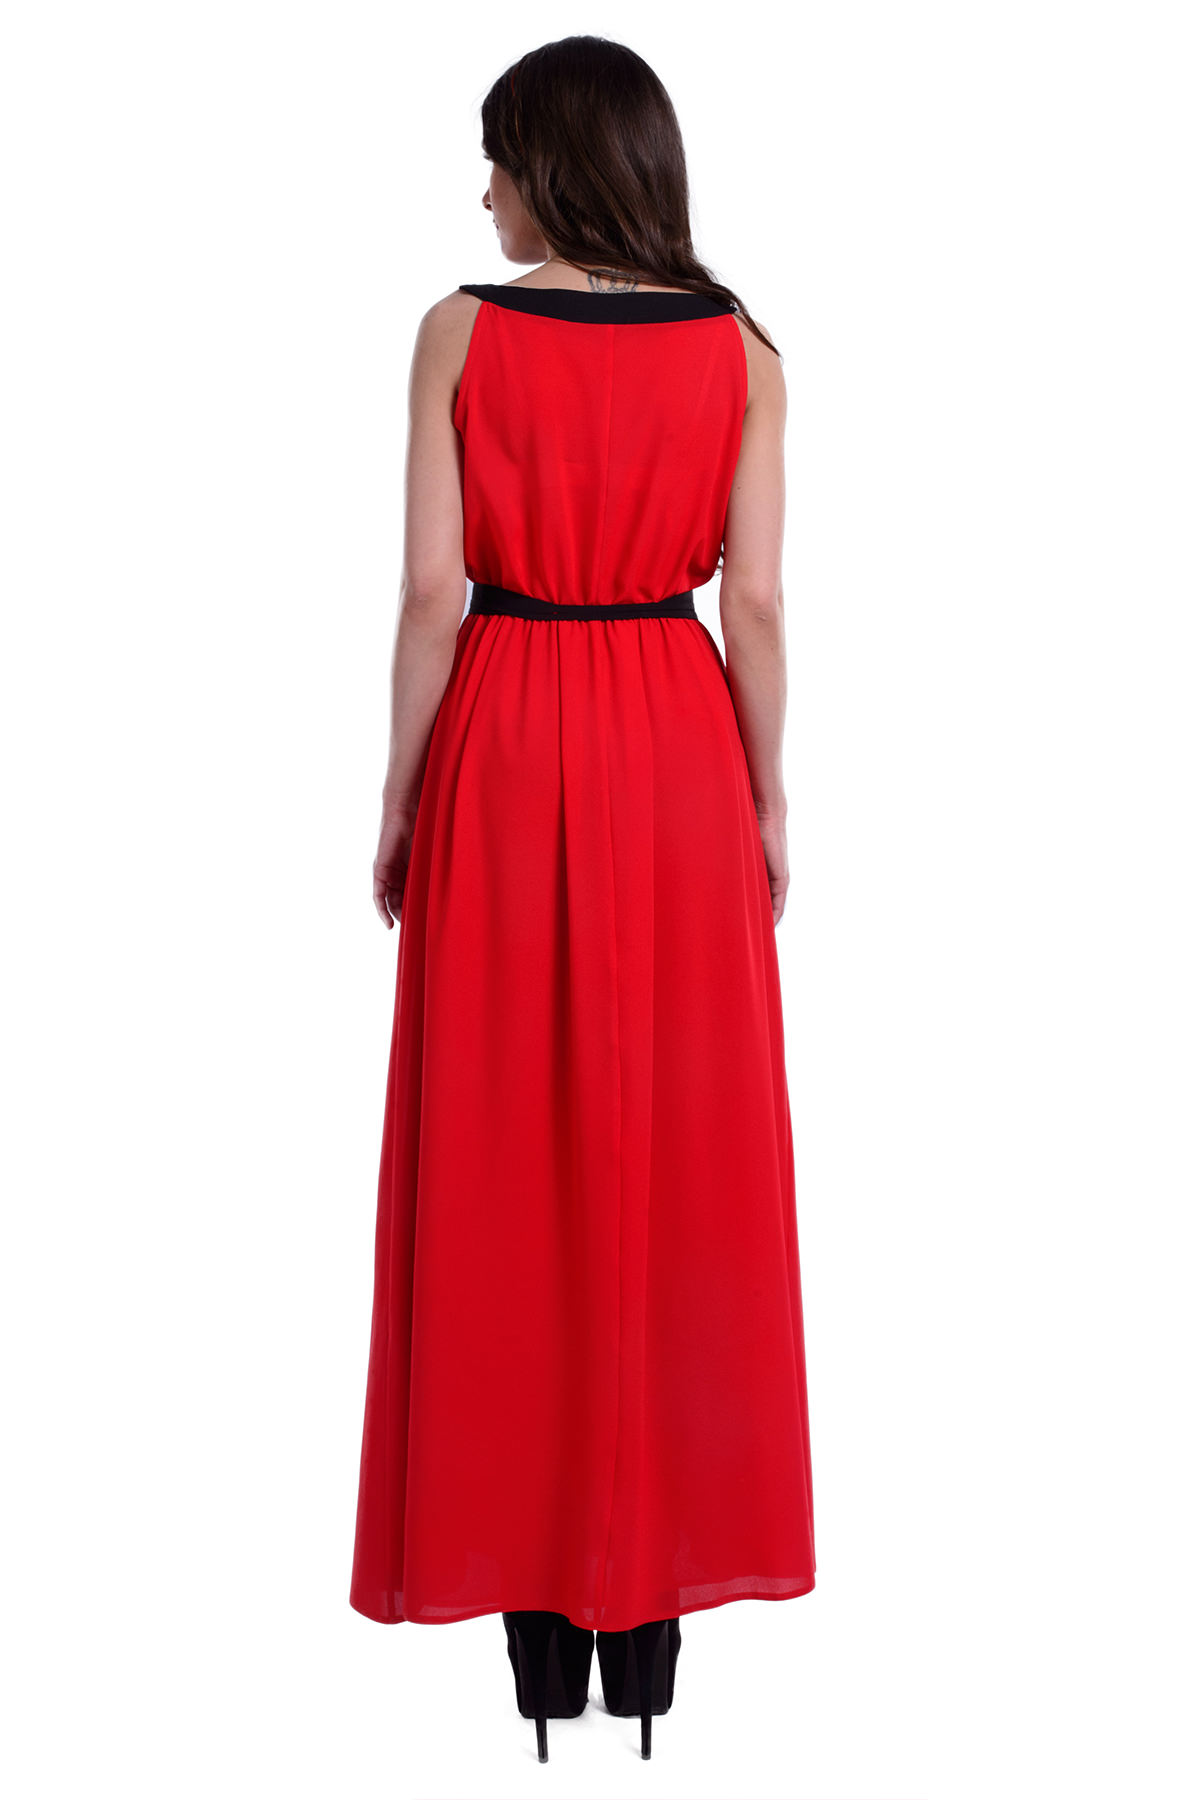 Платье Бали креп шифон АРТ. 6273 Цвет: Красный / черный - фото 3, интернет магазин tm-modus.ru